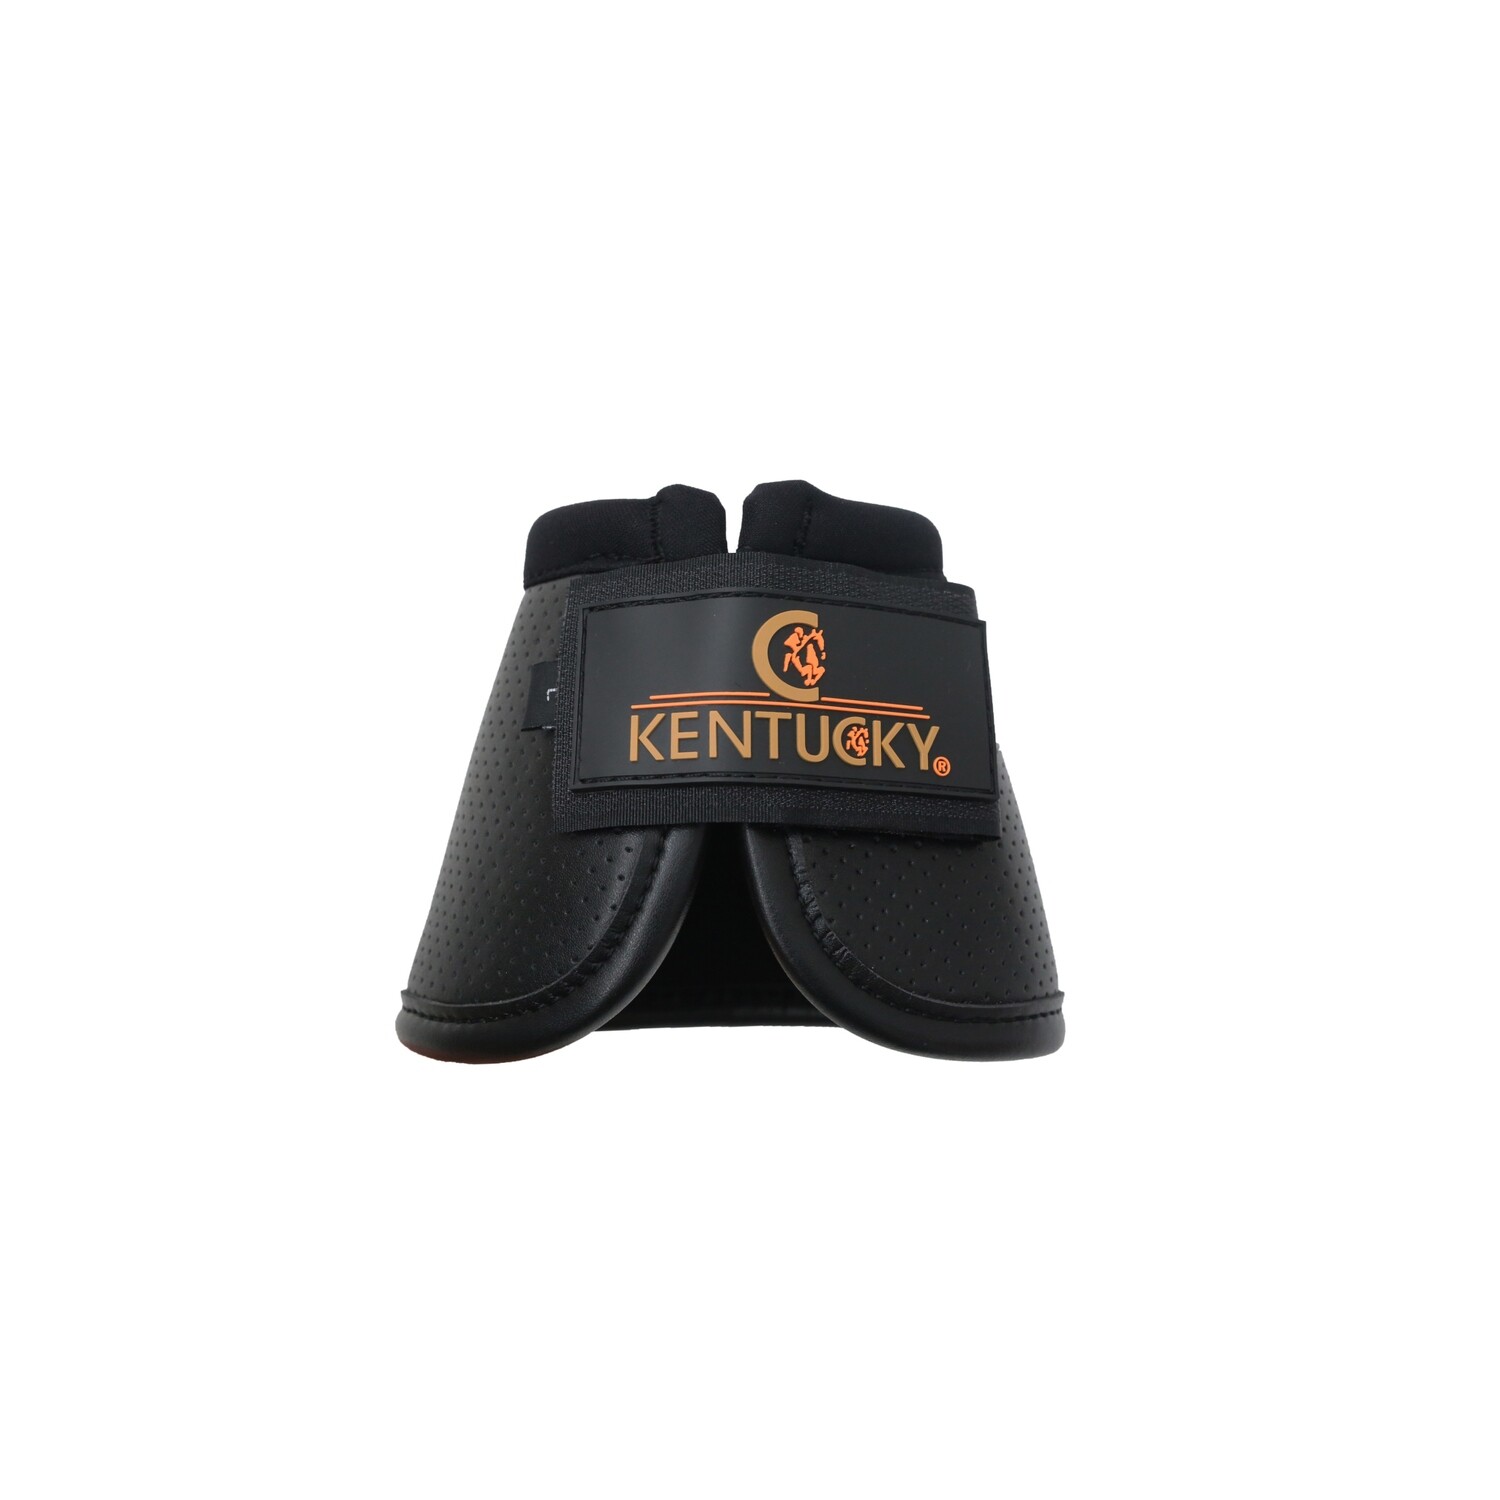 Kentucky Horsewear - Cloches Air Tech